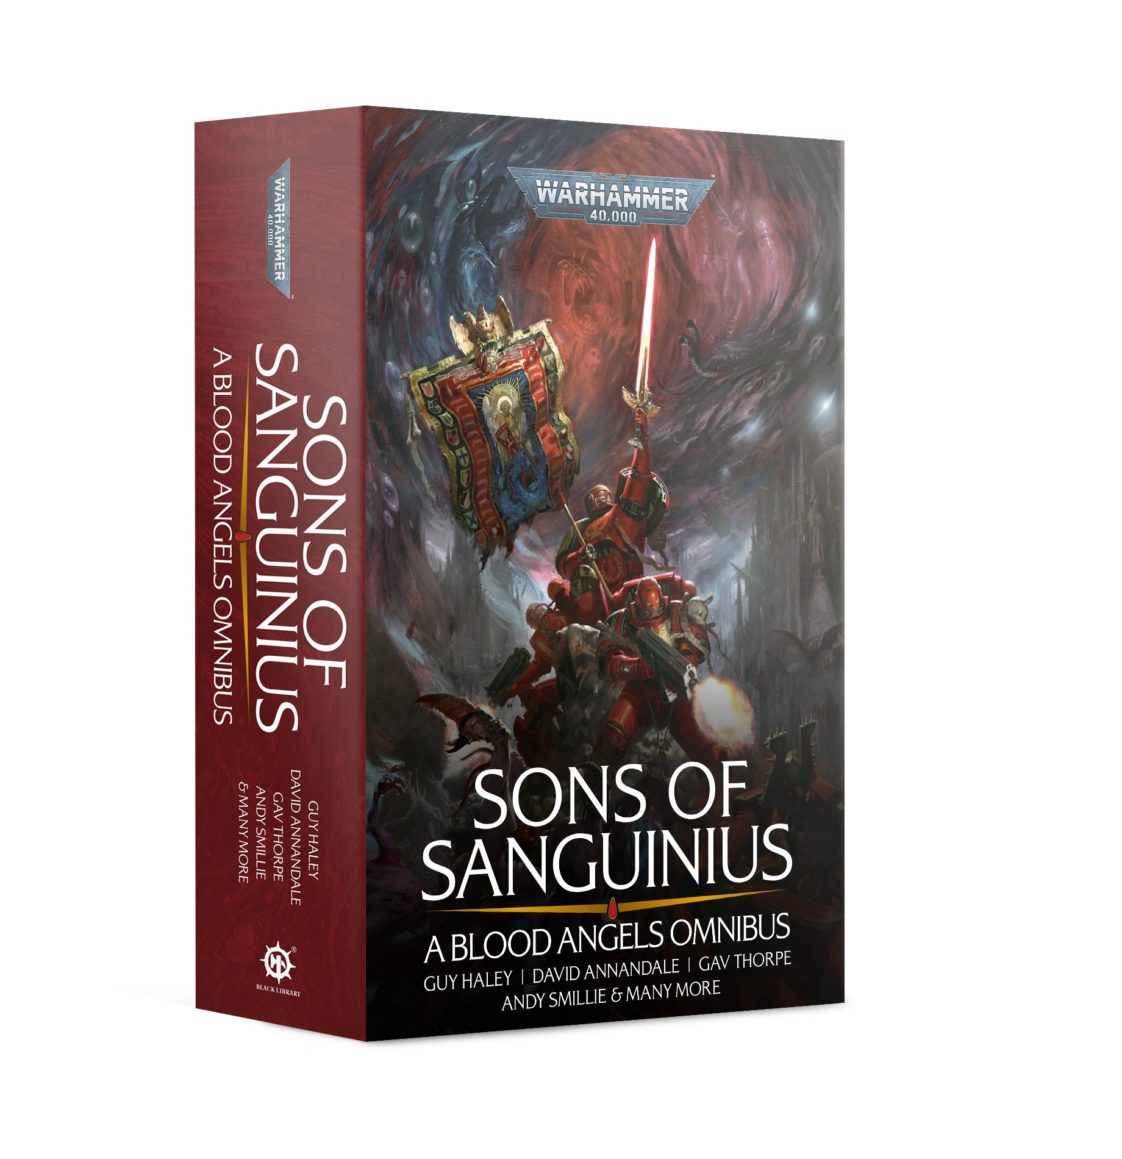 Sons of Sanguinius: A Blood Angels Omnibus (PB)